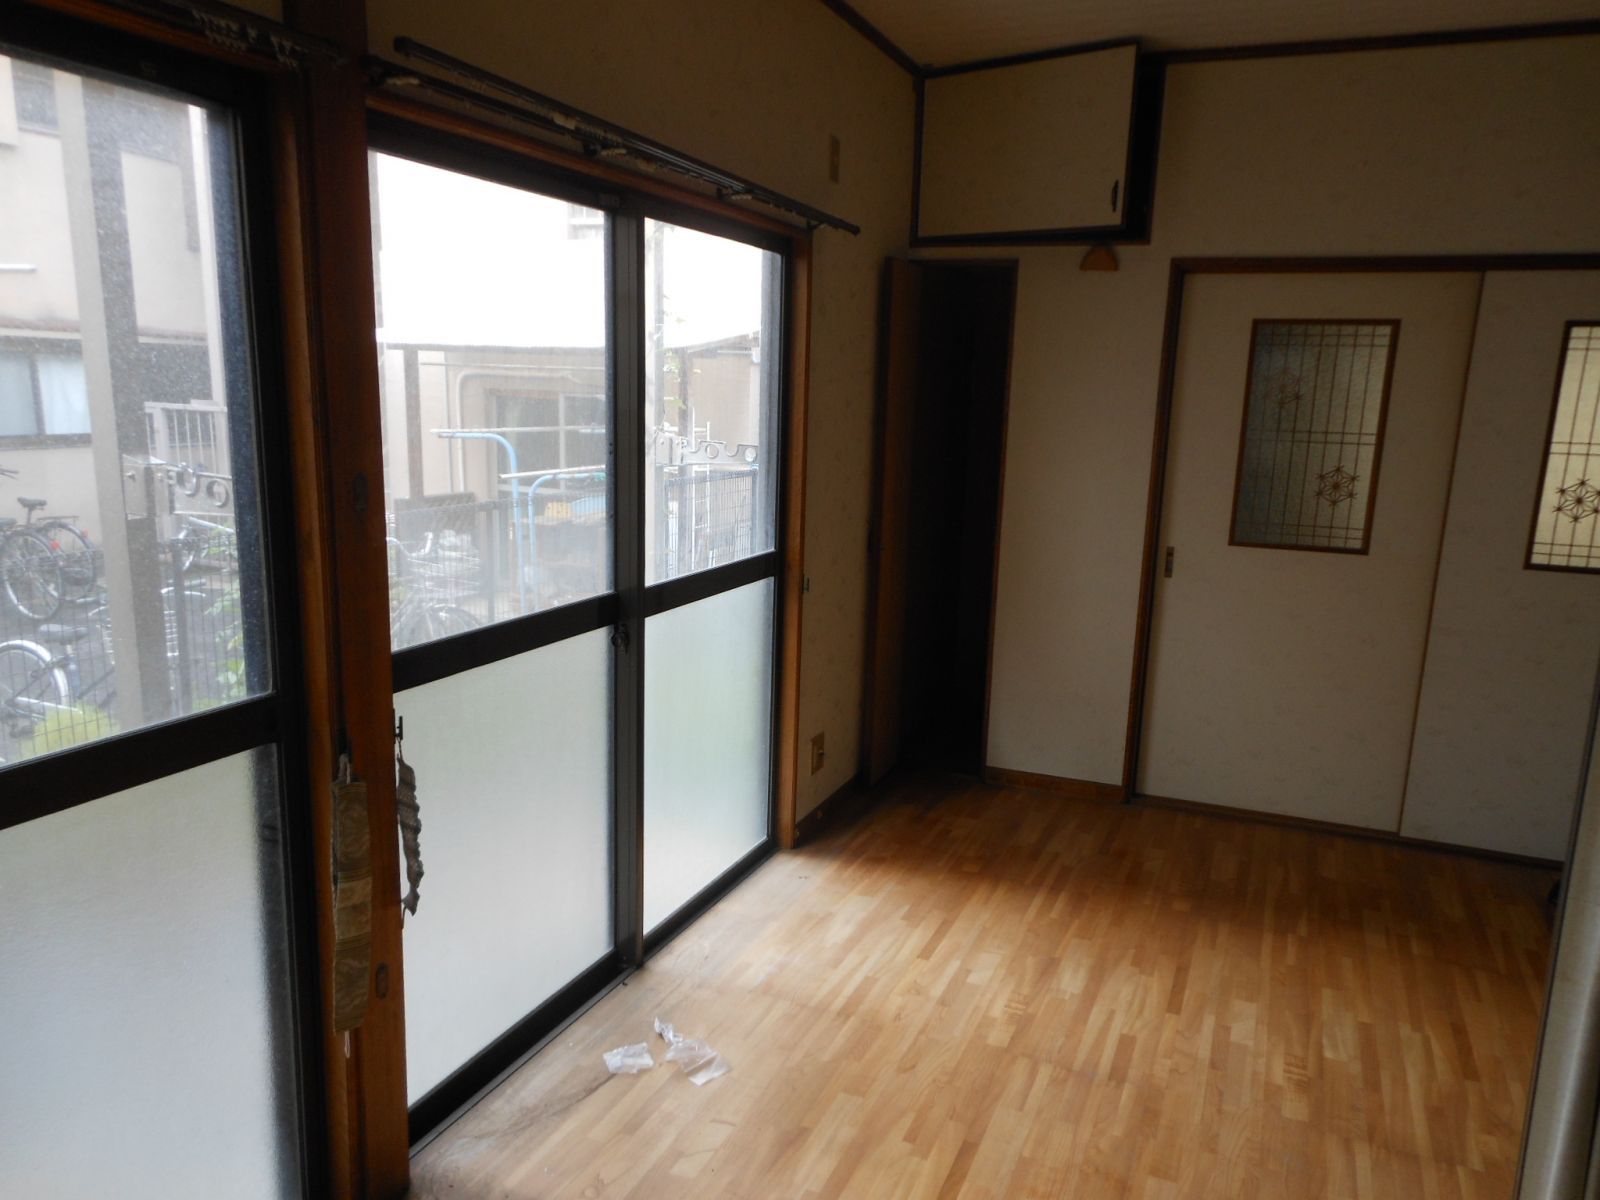 エディオンのリフォームで住まいがかわるまで 5 広島市の不動産仲介 中古マンション 一戸建て 土地 エディオンハウジング広島営業所